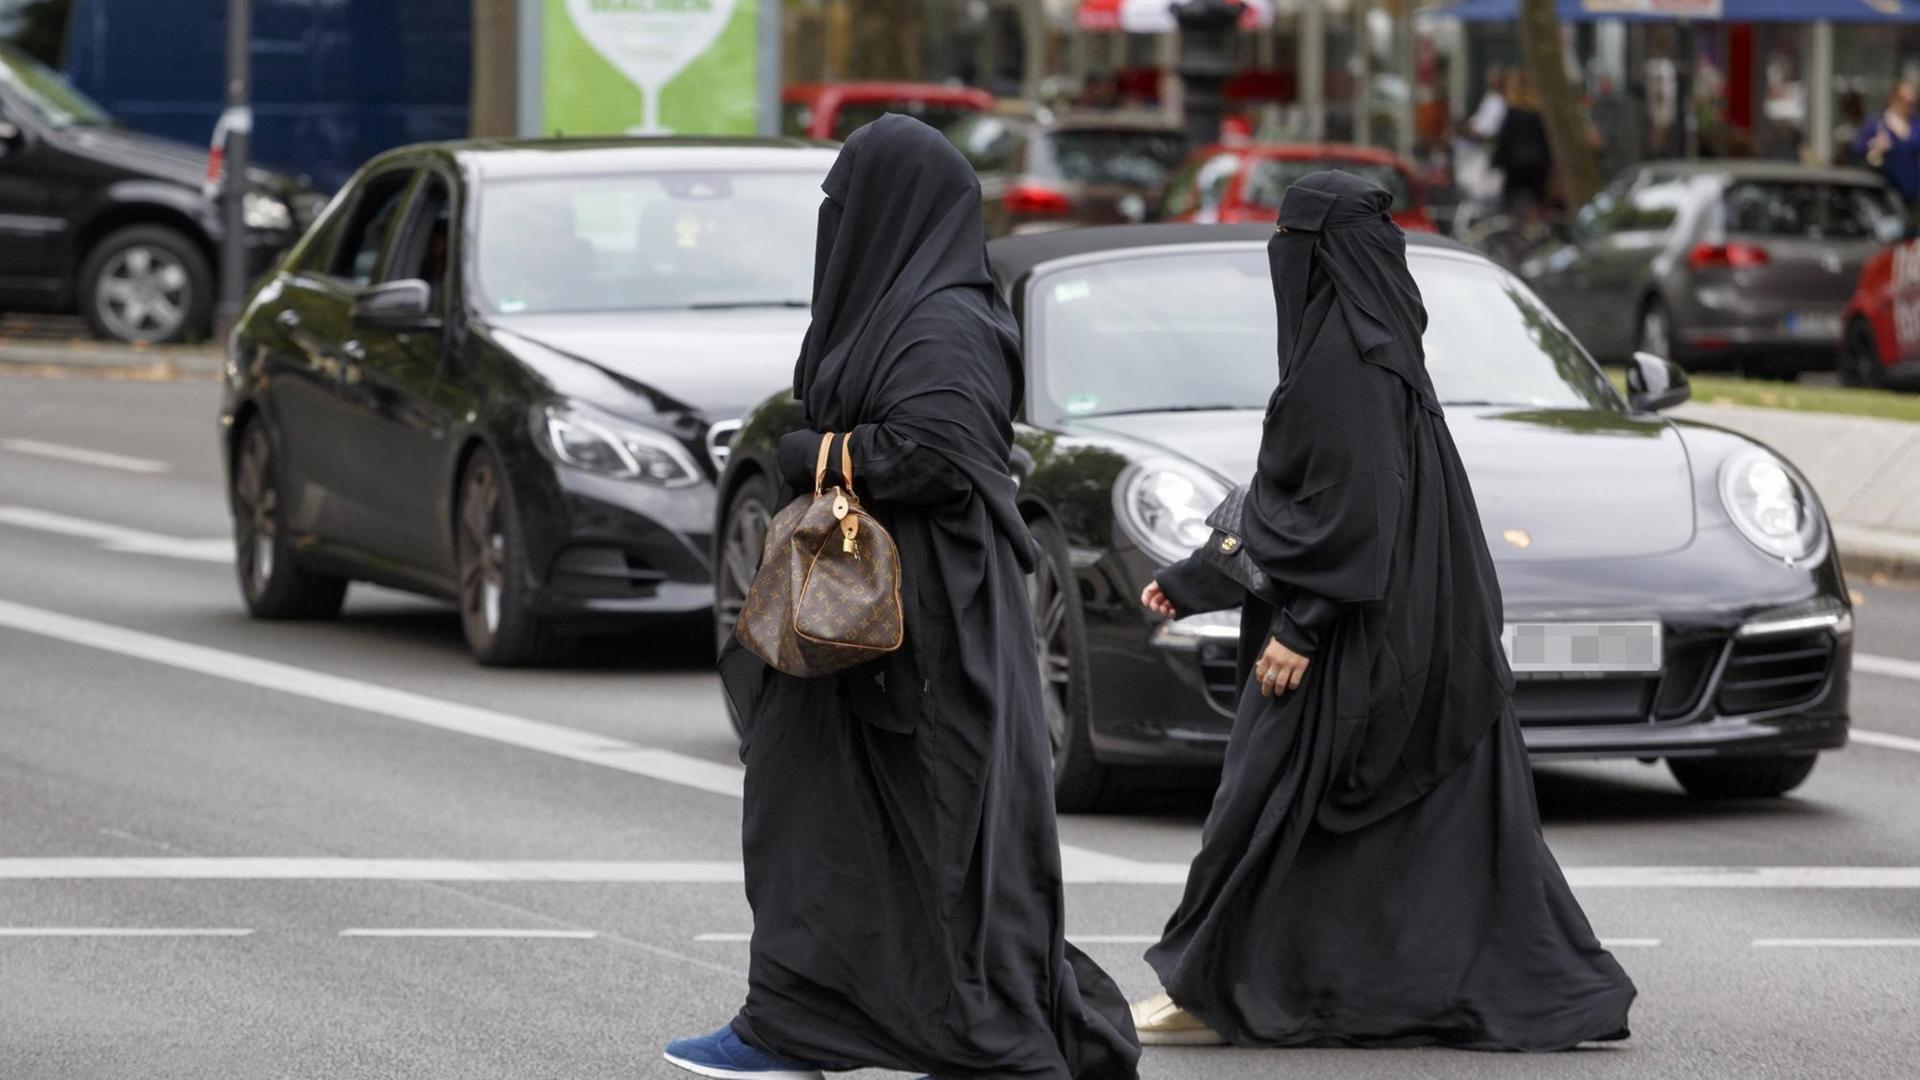 Zwei Frauen überqueren am Berliner Kurfürstendamm die Straße. Sie tragen einen Niqab.